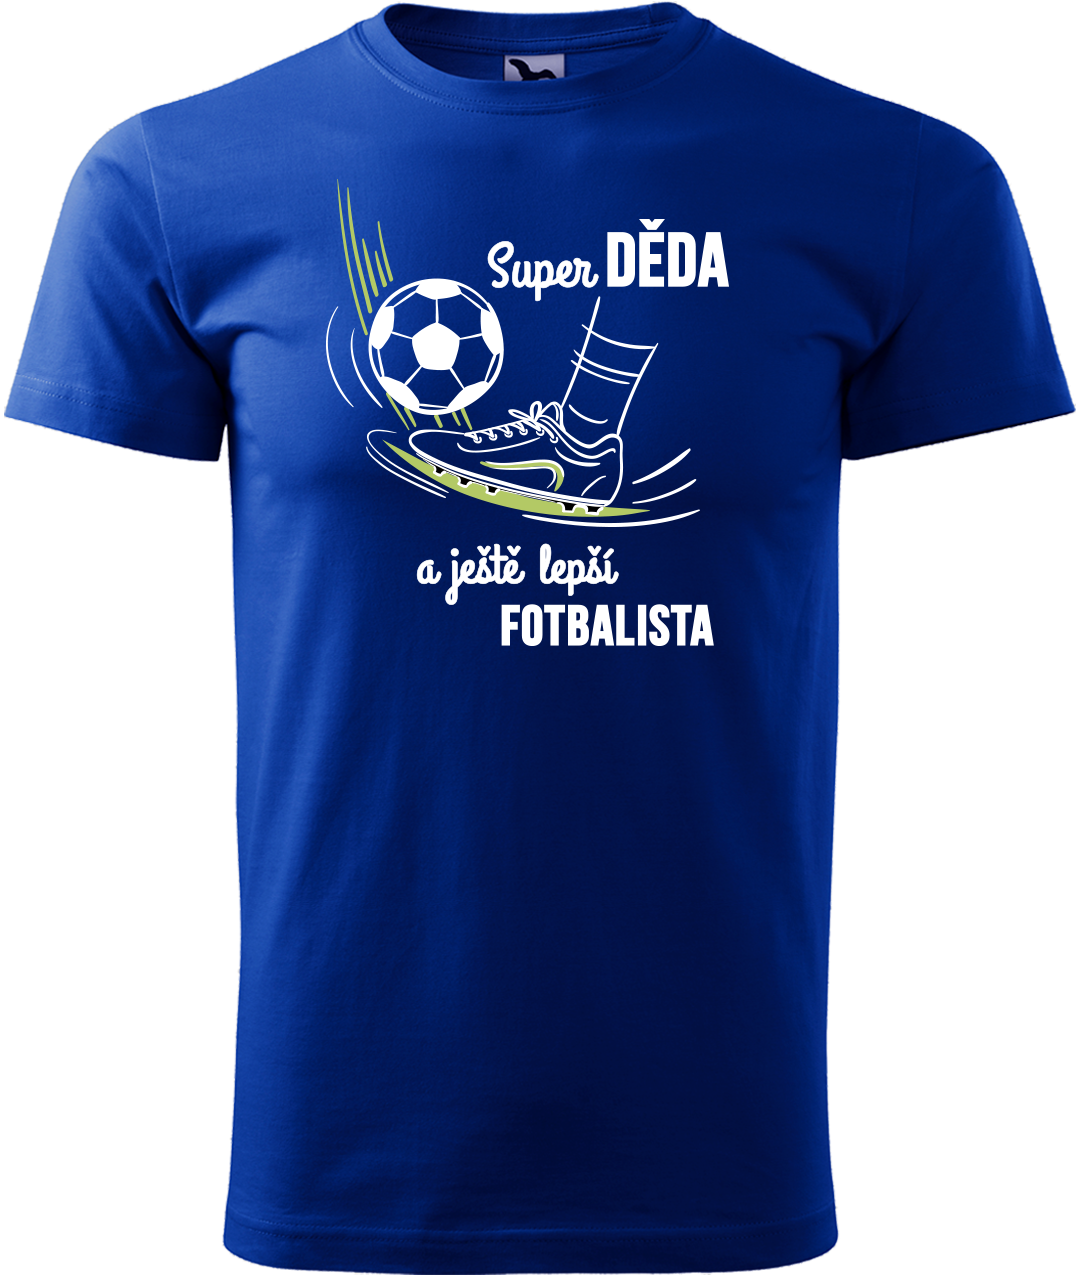 Tričko pro fotbalistu - Super děda a ještě lepší fotbalista Velikost: S, Barva: Královská modrá (05)